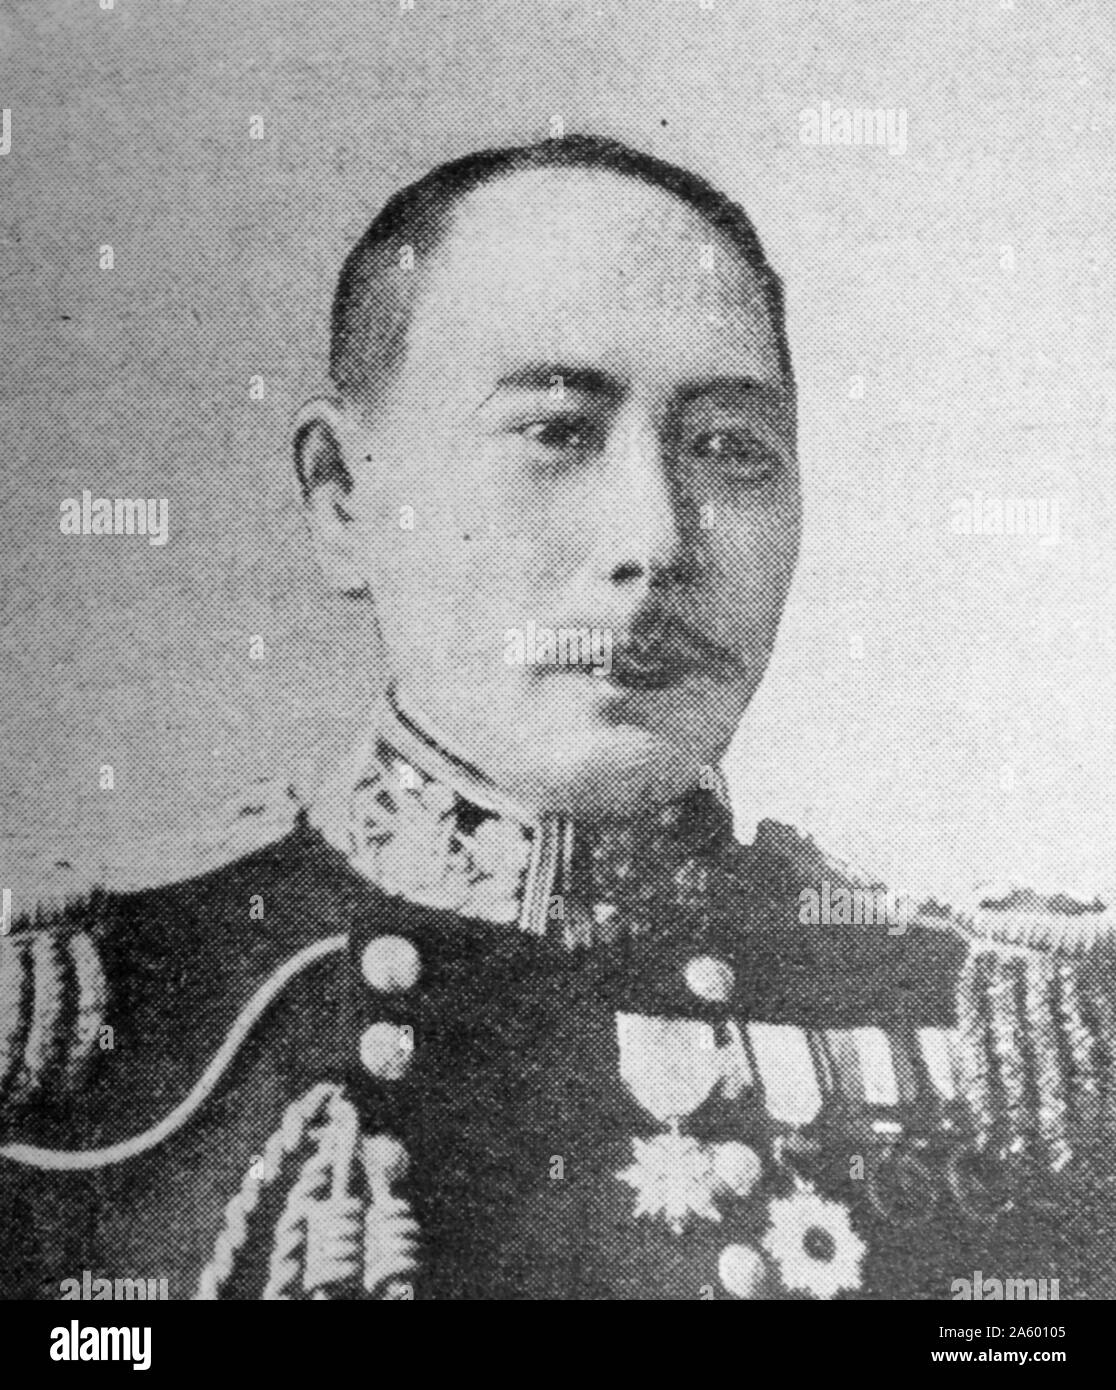 Fotografisches Porträt von Kamimura Hikonoj? (1849 - 1916) eine frühe Admiral der kaiserlichen japanischen Marine, später Kommandeur der 2. IJN Flotte während des russisch-japanischen Krieges, vor allem bei der Schlacht von Ulsan und Tsushima. Stockfoto